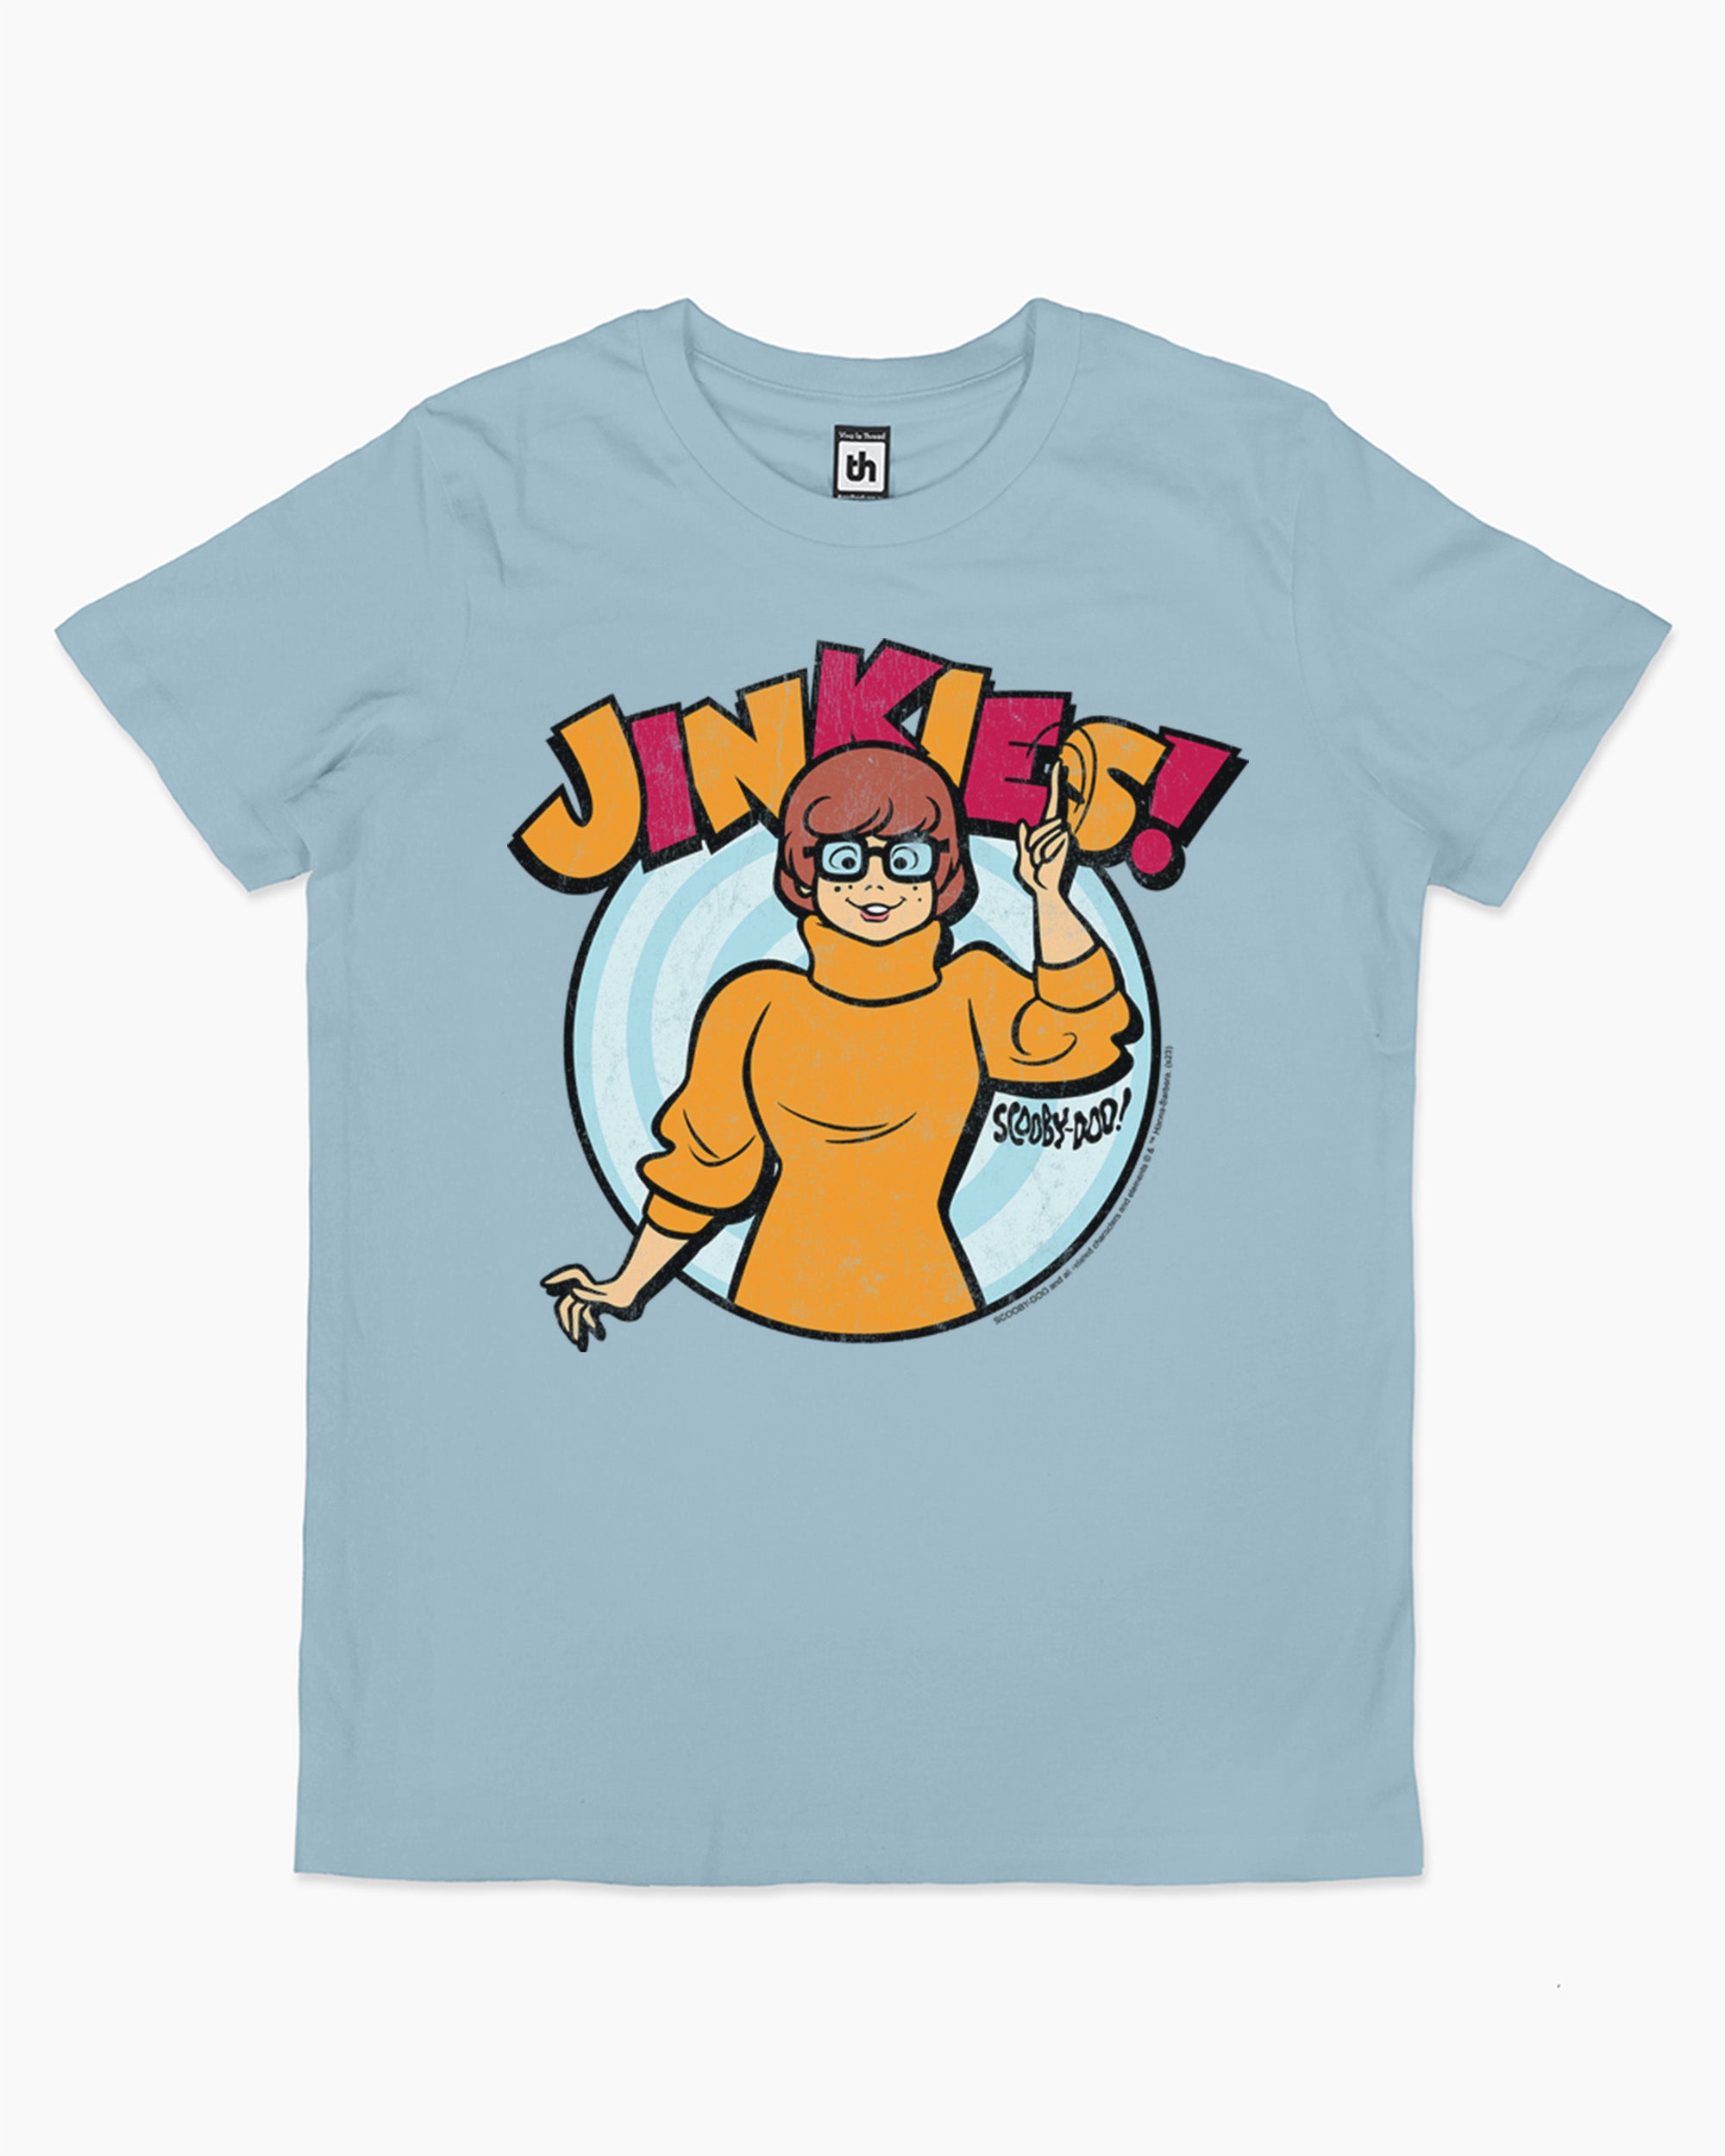 Jinkies Kids T-Shirt